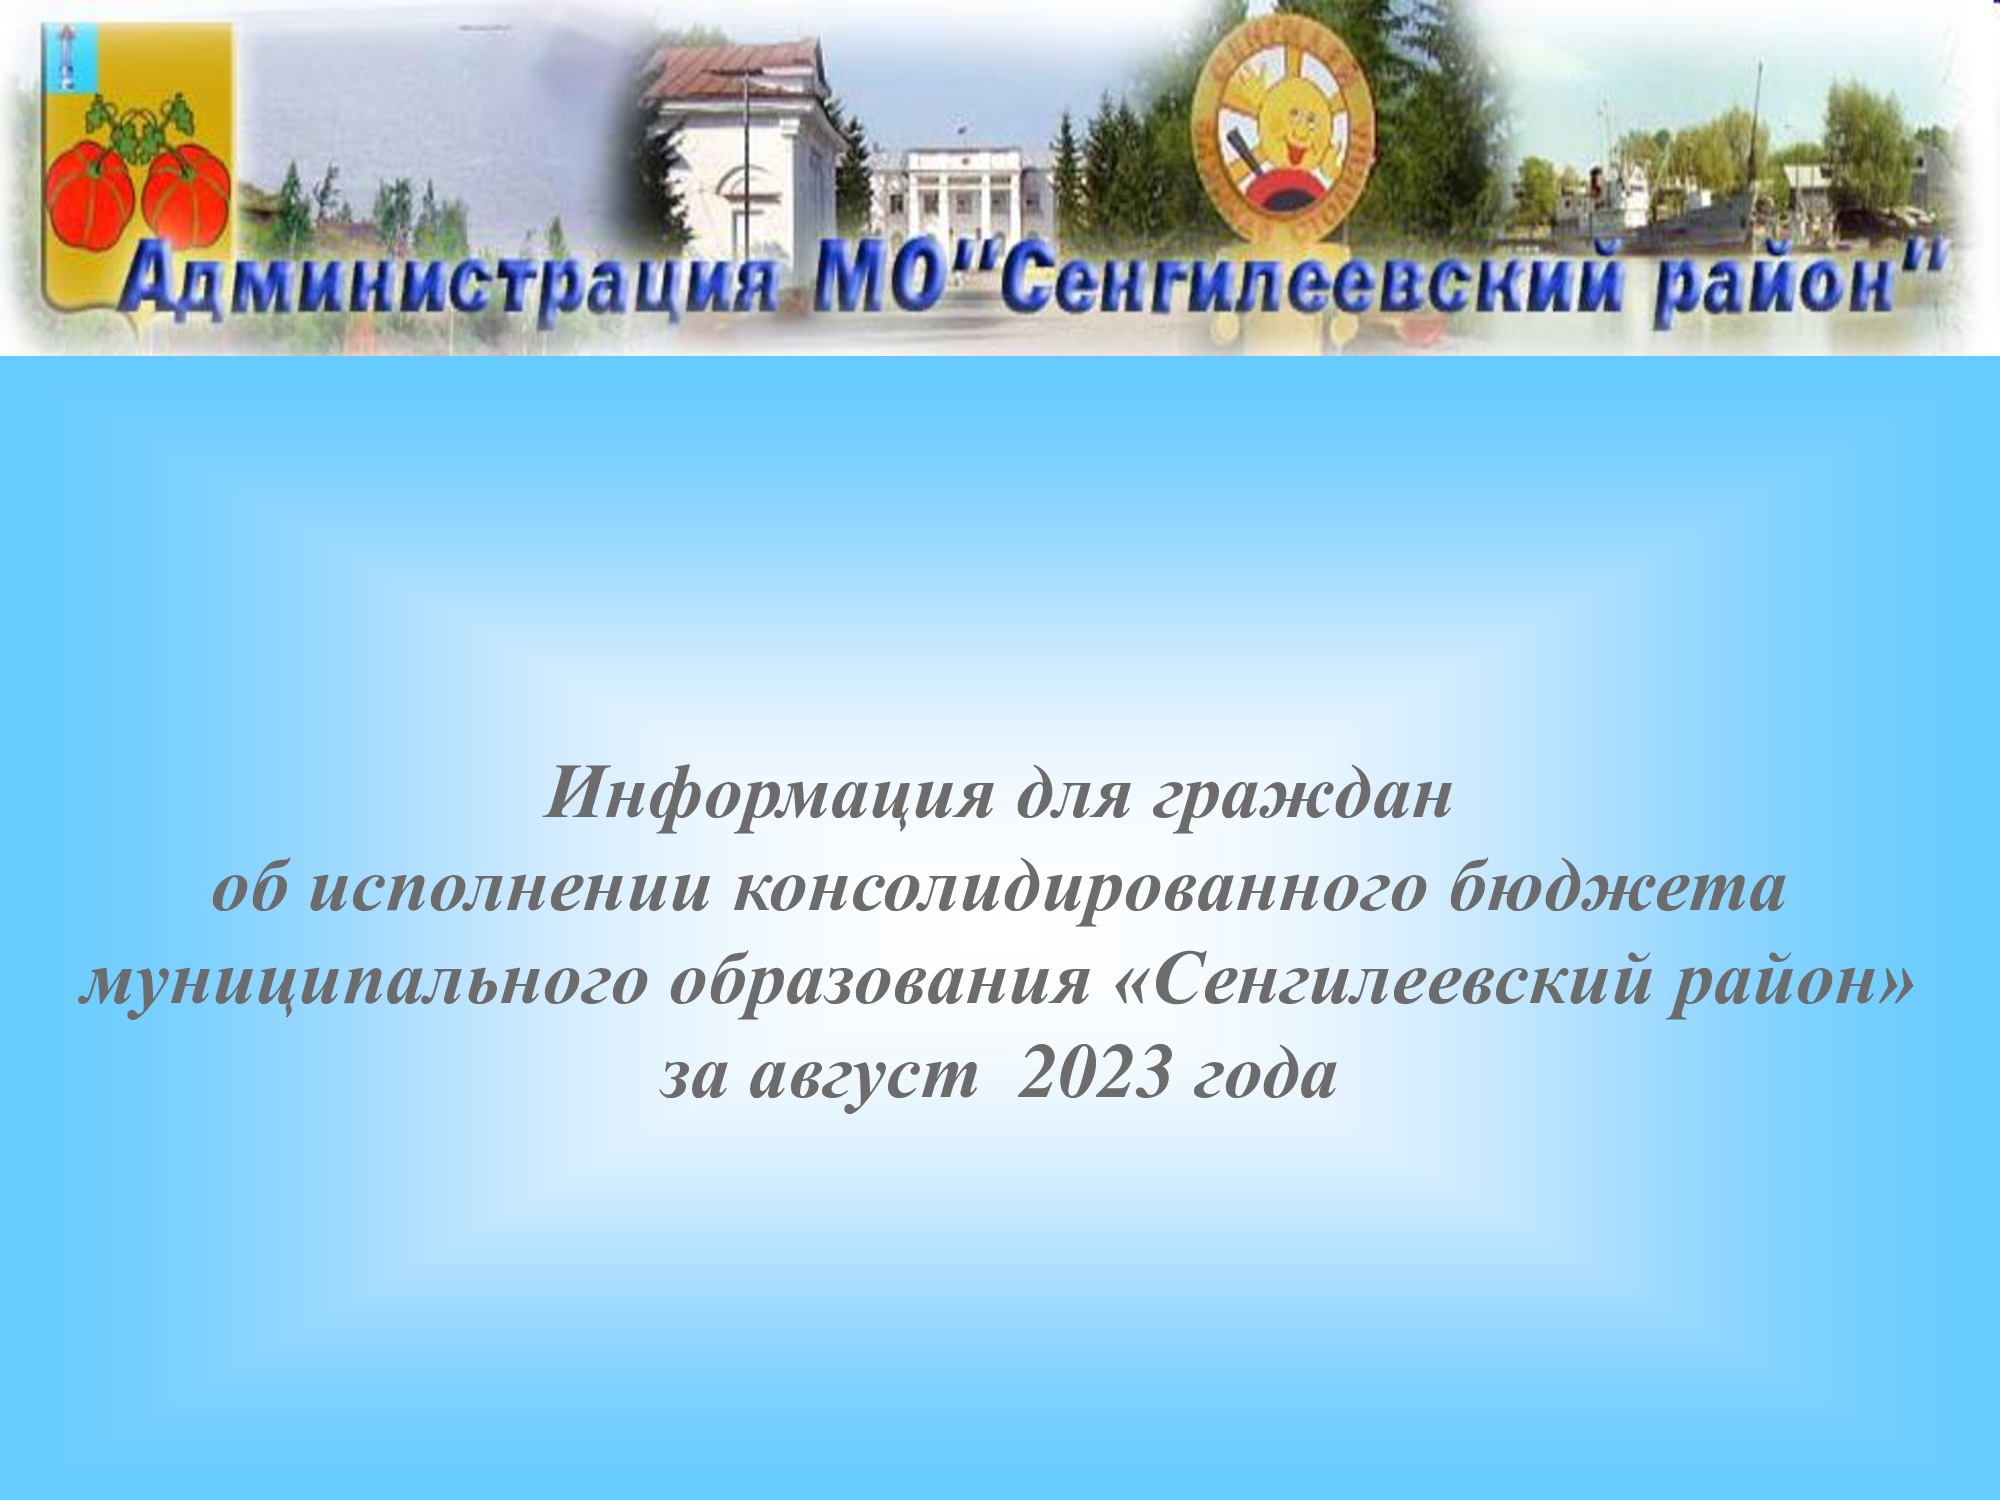 Информация для граждан об исполнении консолидированного бюджета муниципального образования «Сенгилеевский район» за август  2023 года.